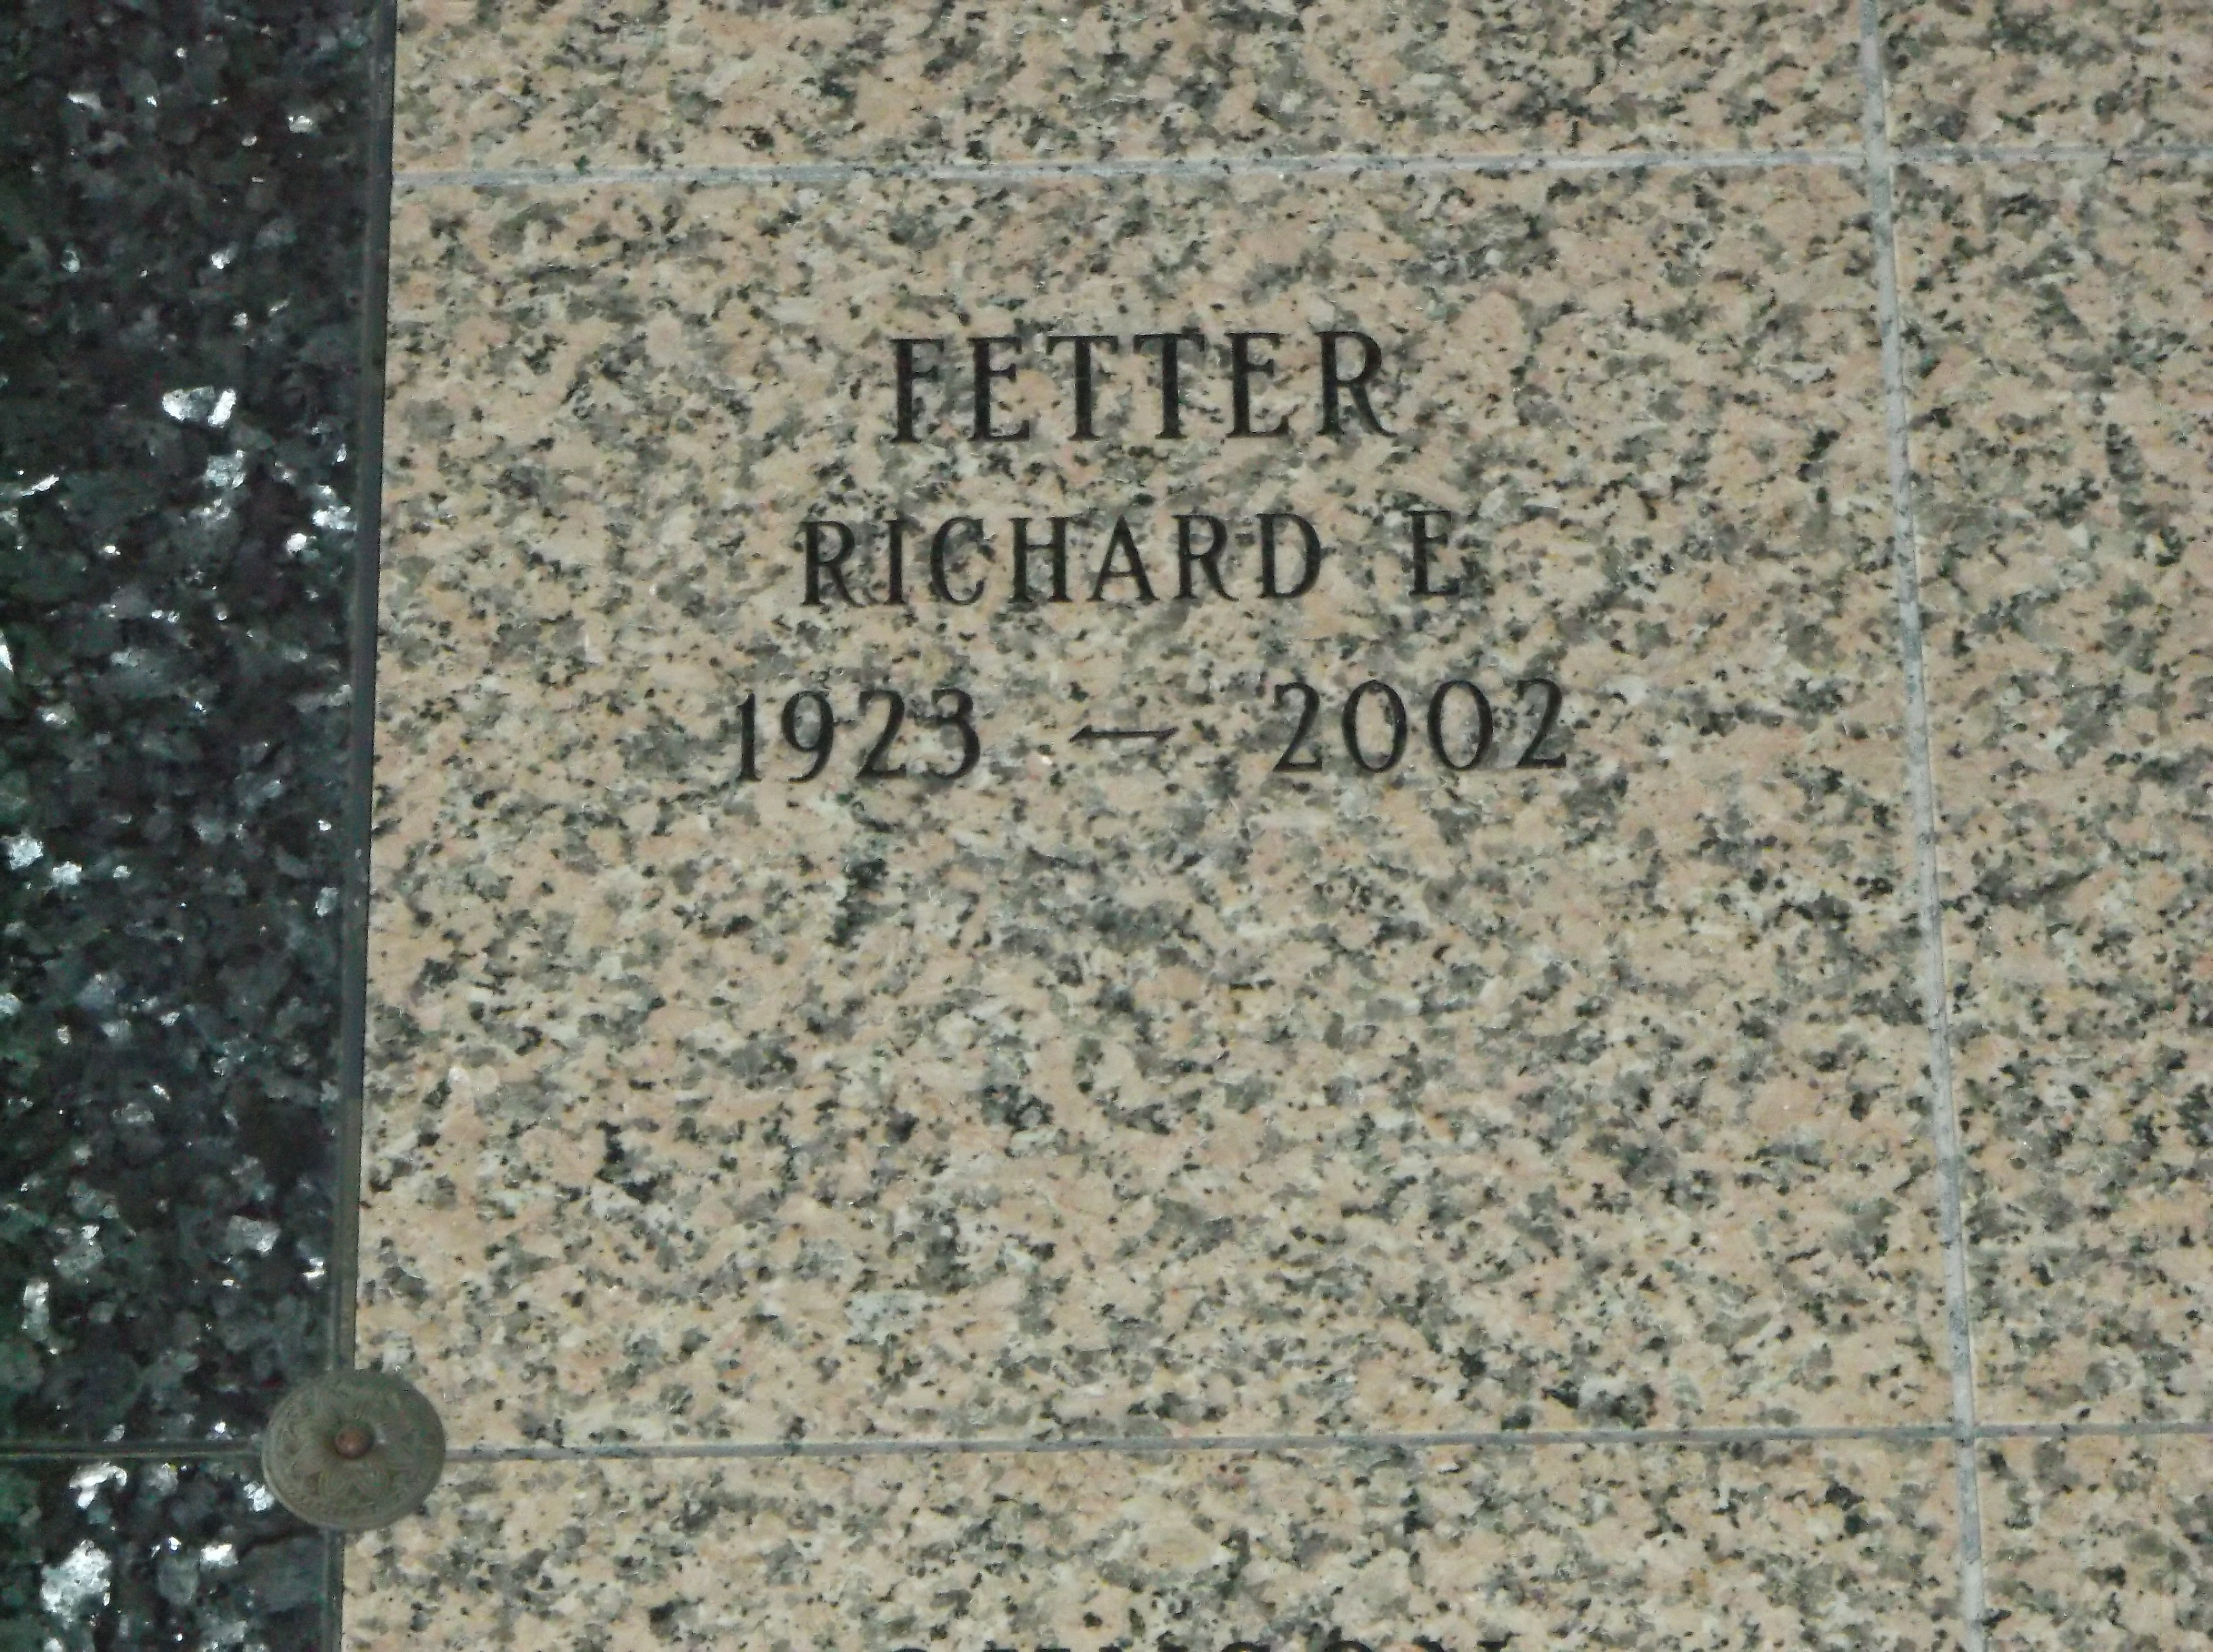 Richard E Fetter